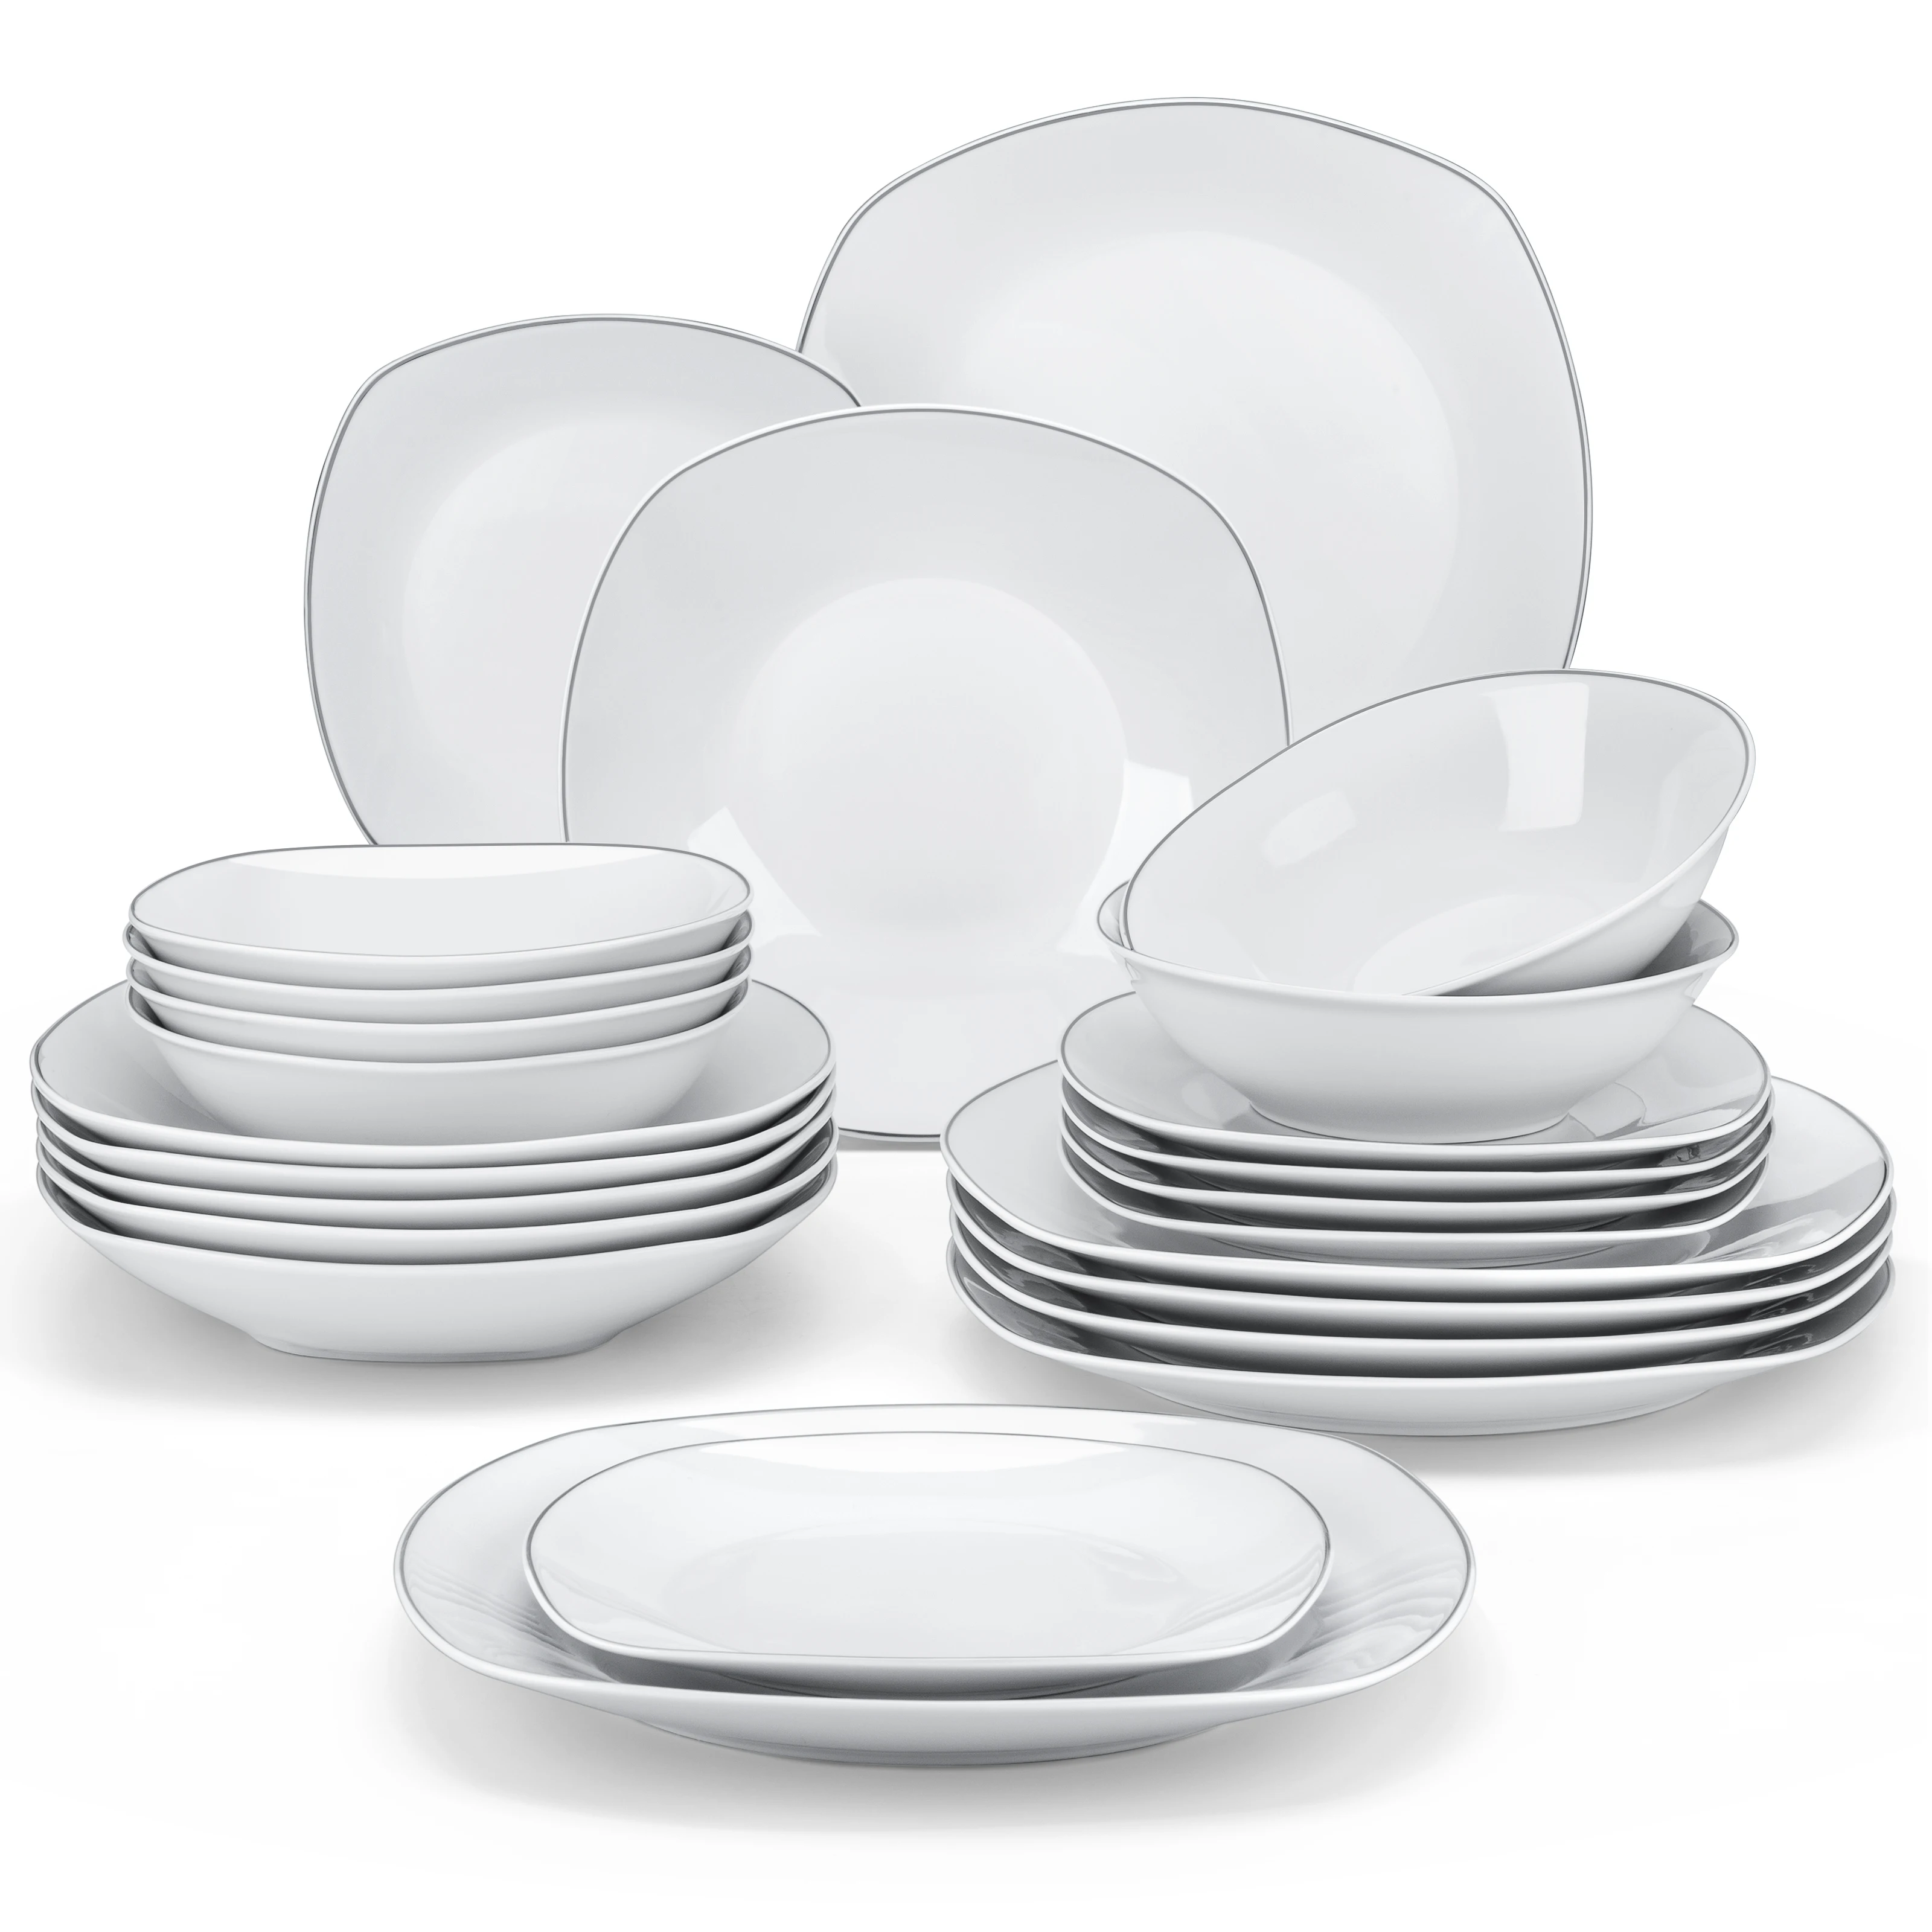 Наборы фарфоровых тарелок MALACASA ELISA из 24/48 предметов, 12 * тарелок для супа, набор посуды на 12/24 персоны